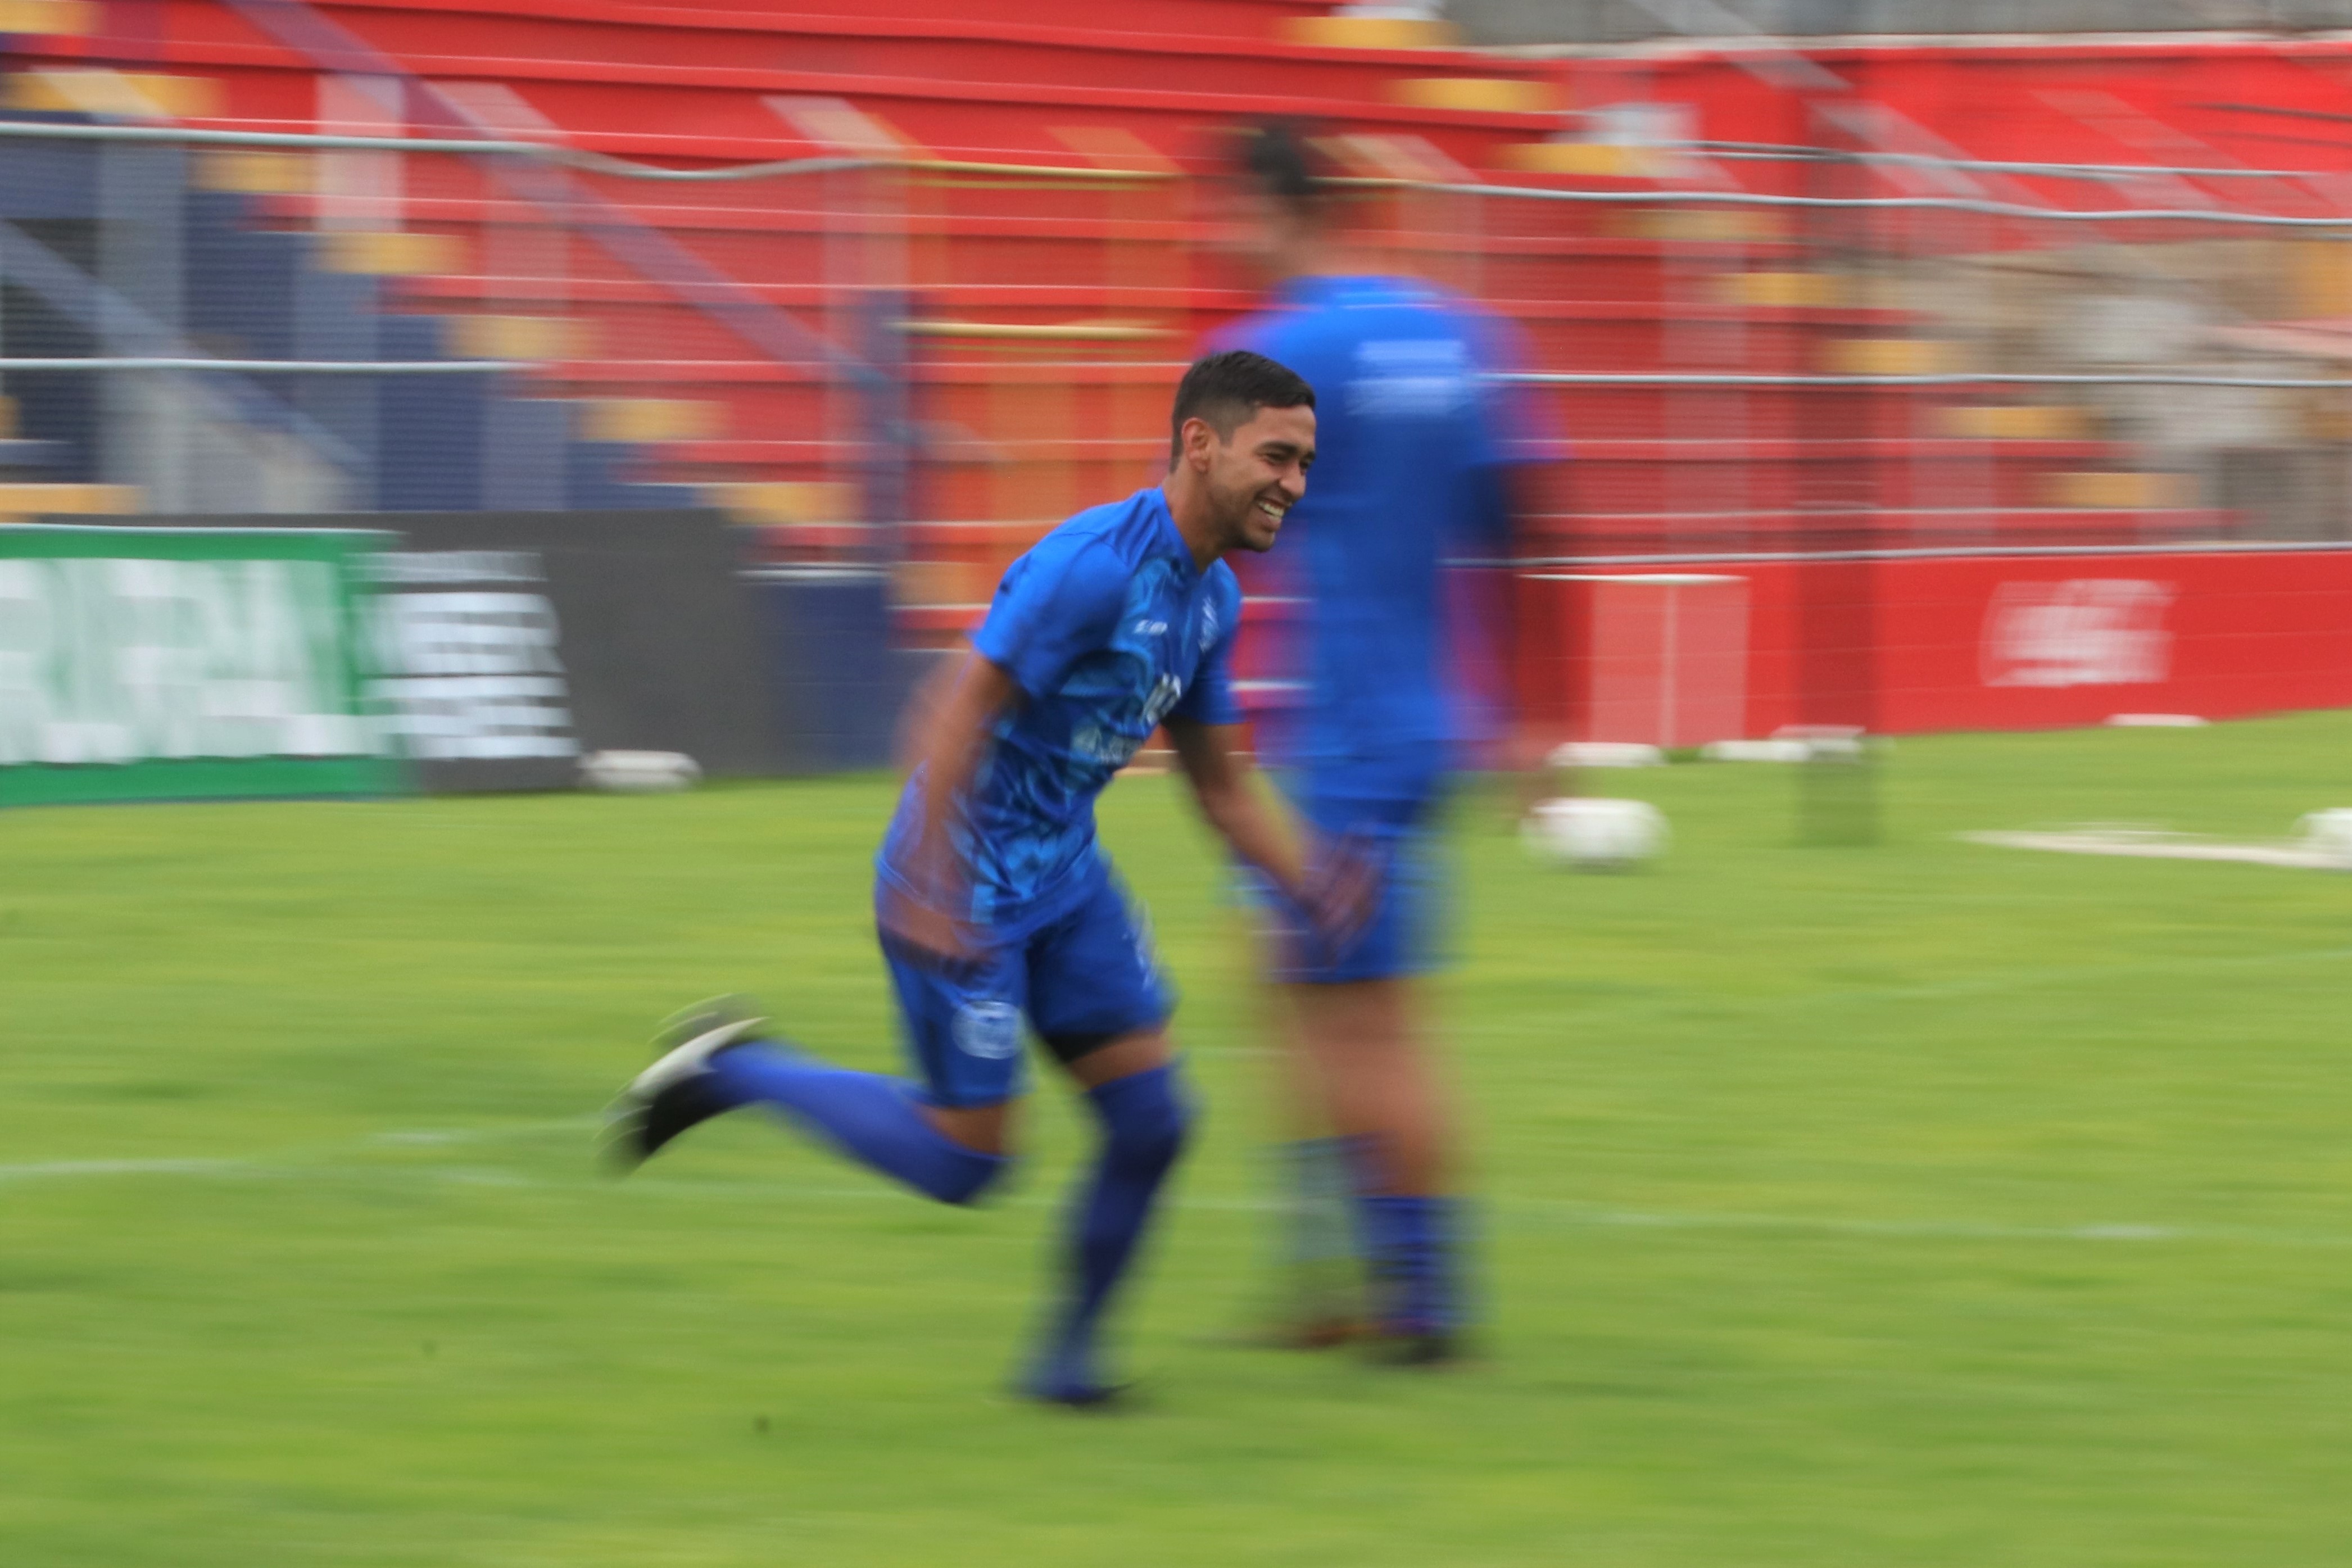 El pasado sábado Cristian Albizures marcó su primer gol del torneo que le ha dado motivación para encarar esta nueva jornada. (Foto Prensa Libre: Raúl Juárez)